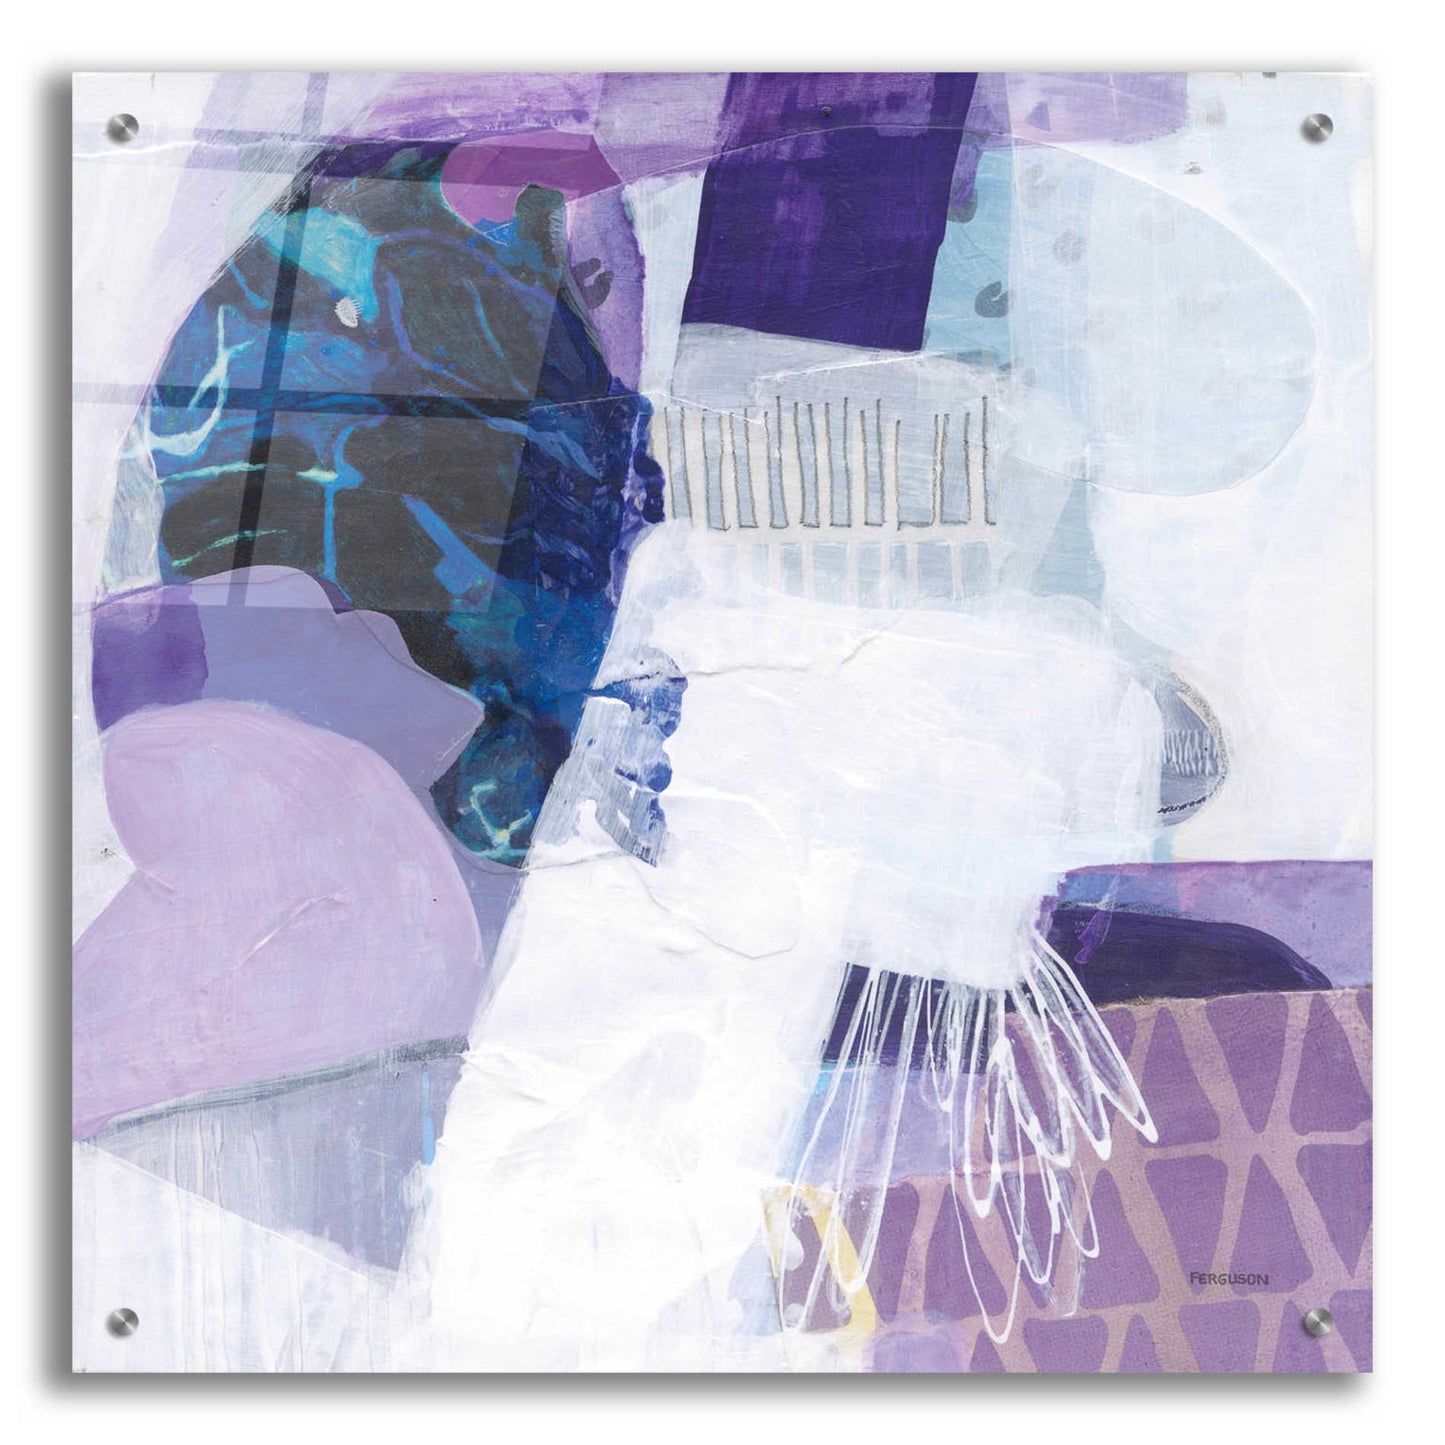 Epic Art 'Abstract Layers III' by Kathy Ferguson, Acrylic Glass Wall Art,24x24